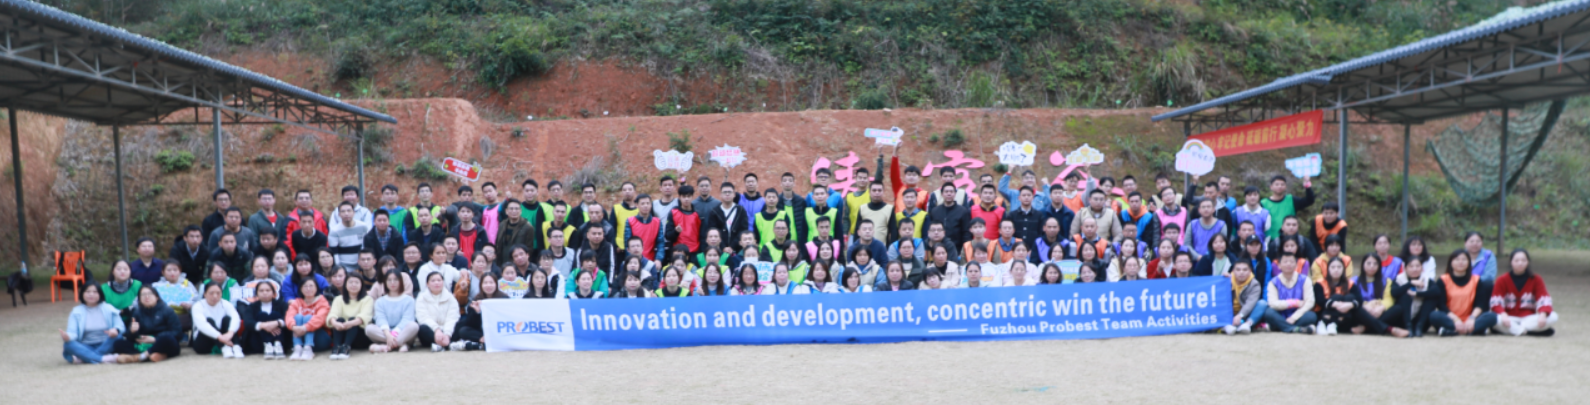 ¡Trabajad juntos, cread un futuro mejor!Actividad de formación de equipos de Fuzhou Probest